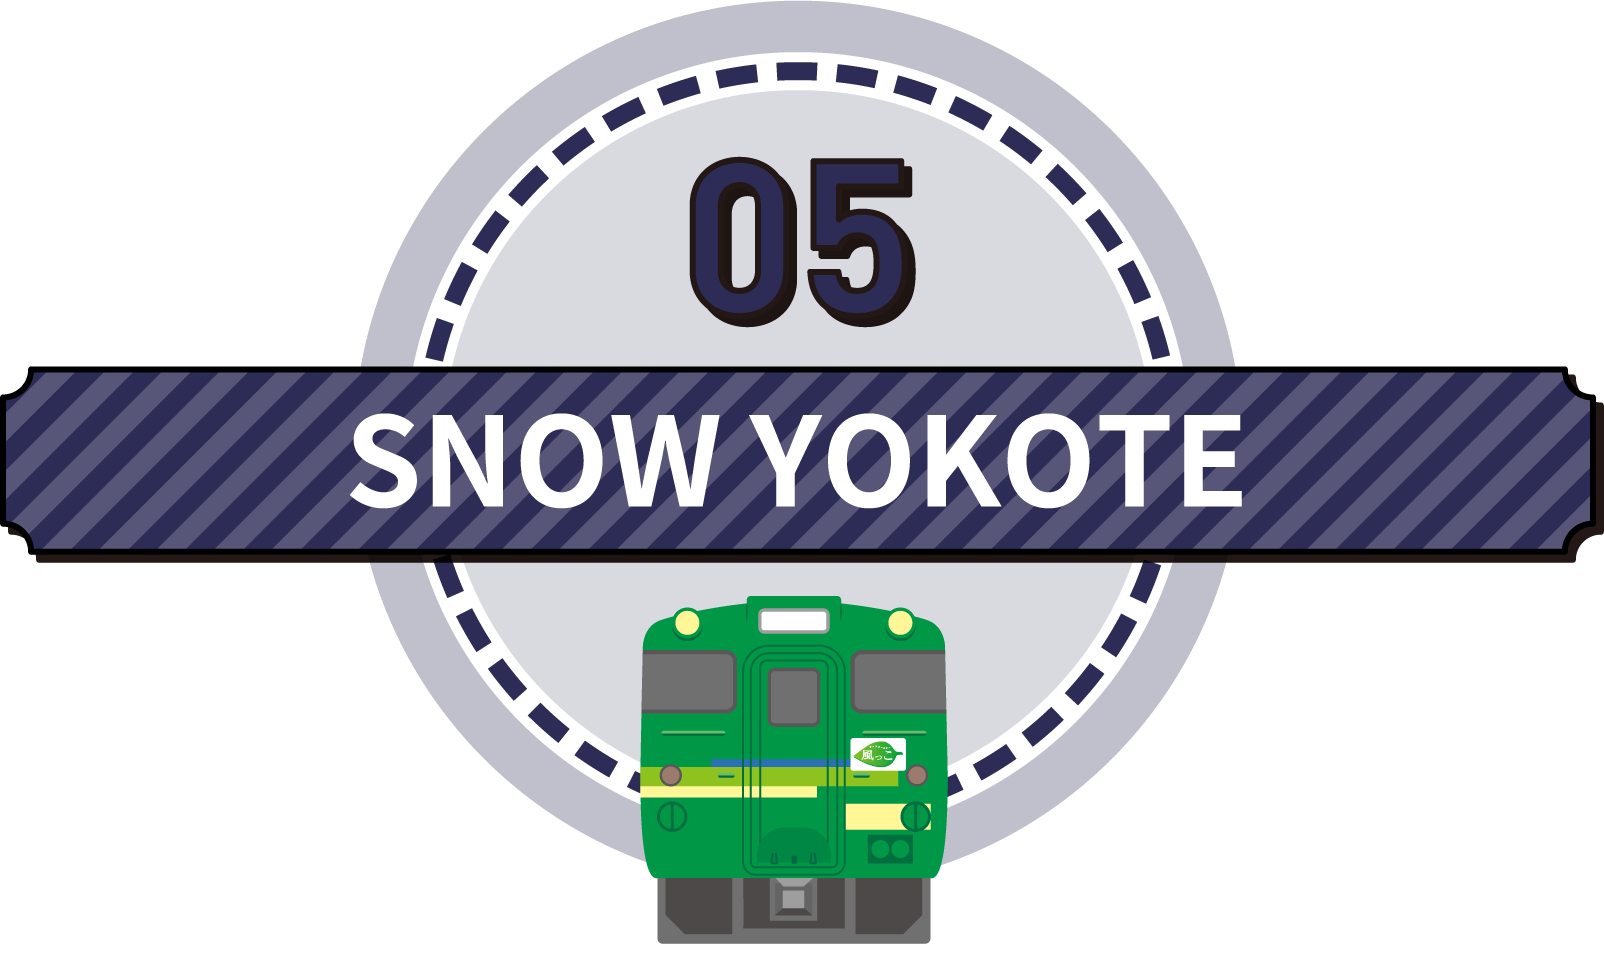 JR奥羽本線・SNOW YOKOTE・風っこ